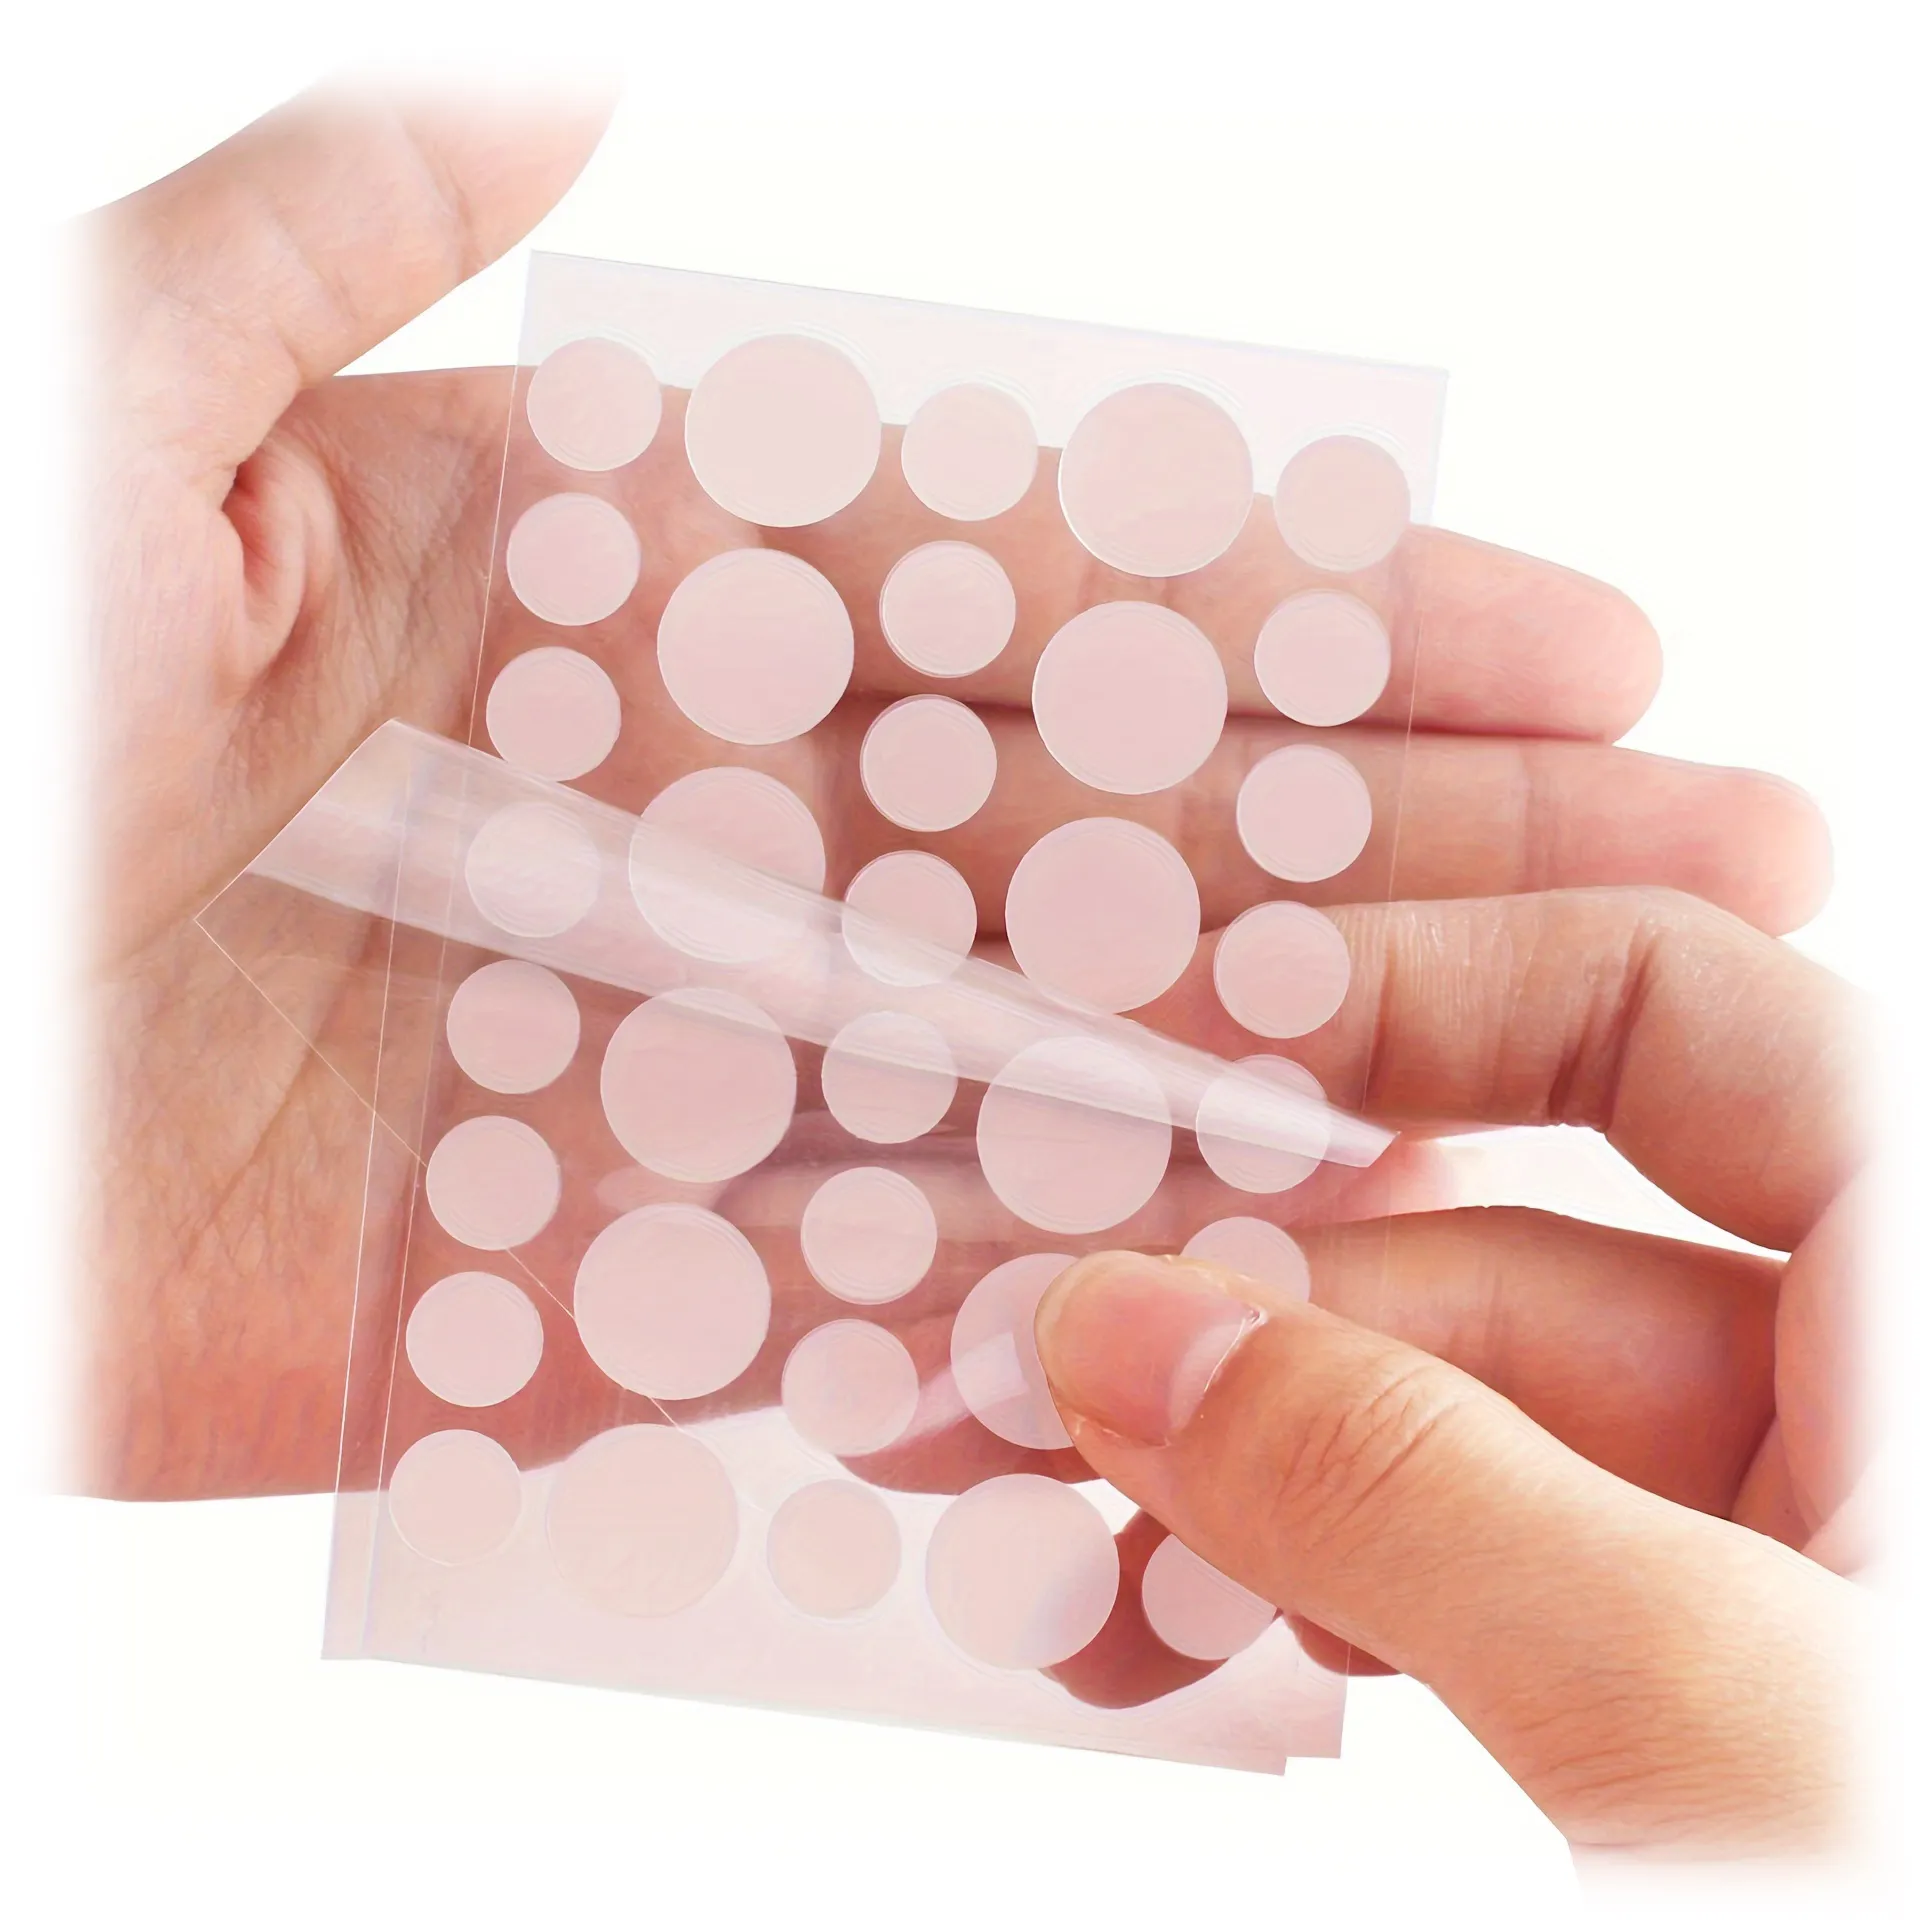 Packung bestehend aus 24 natürlichen transparenten Gesichtsausschlag-Patch Eigenmarke Dots Pimple Patch für Flecken-Patches